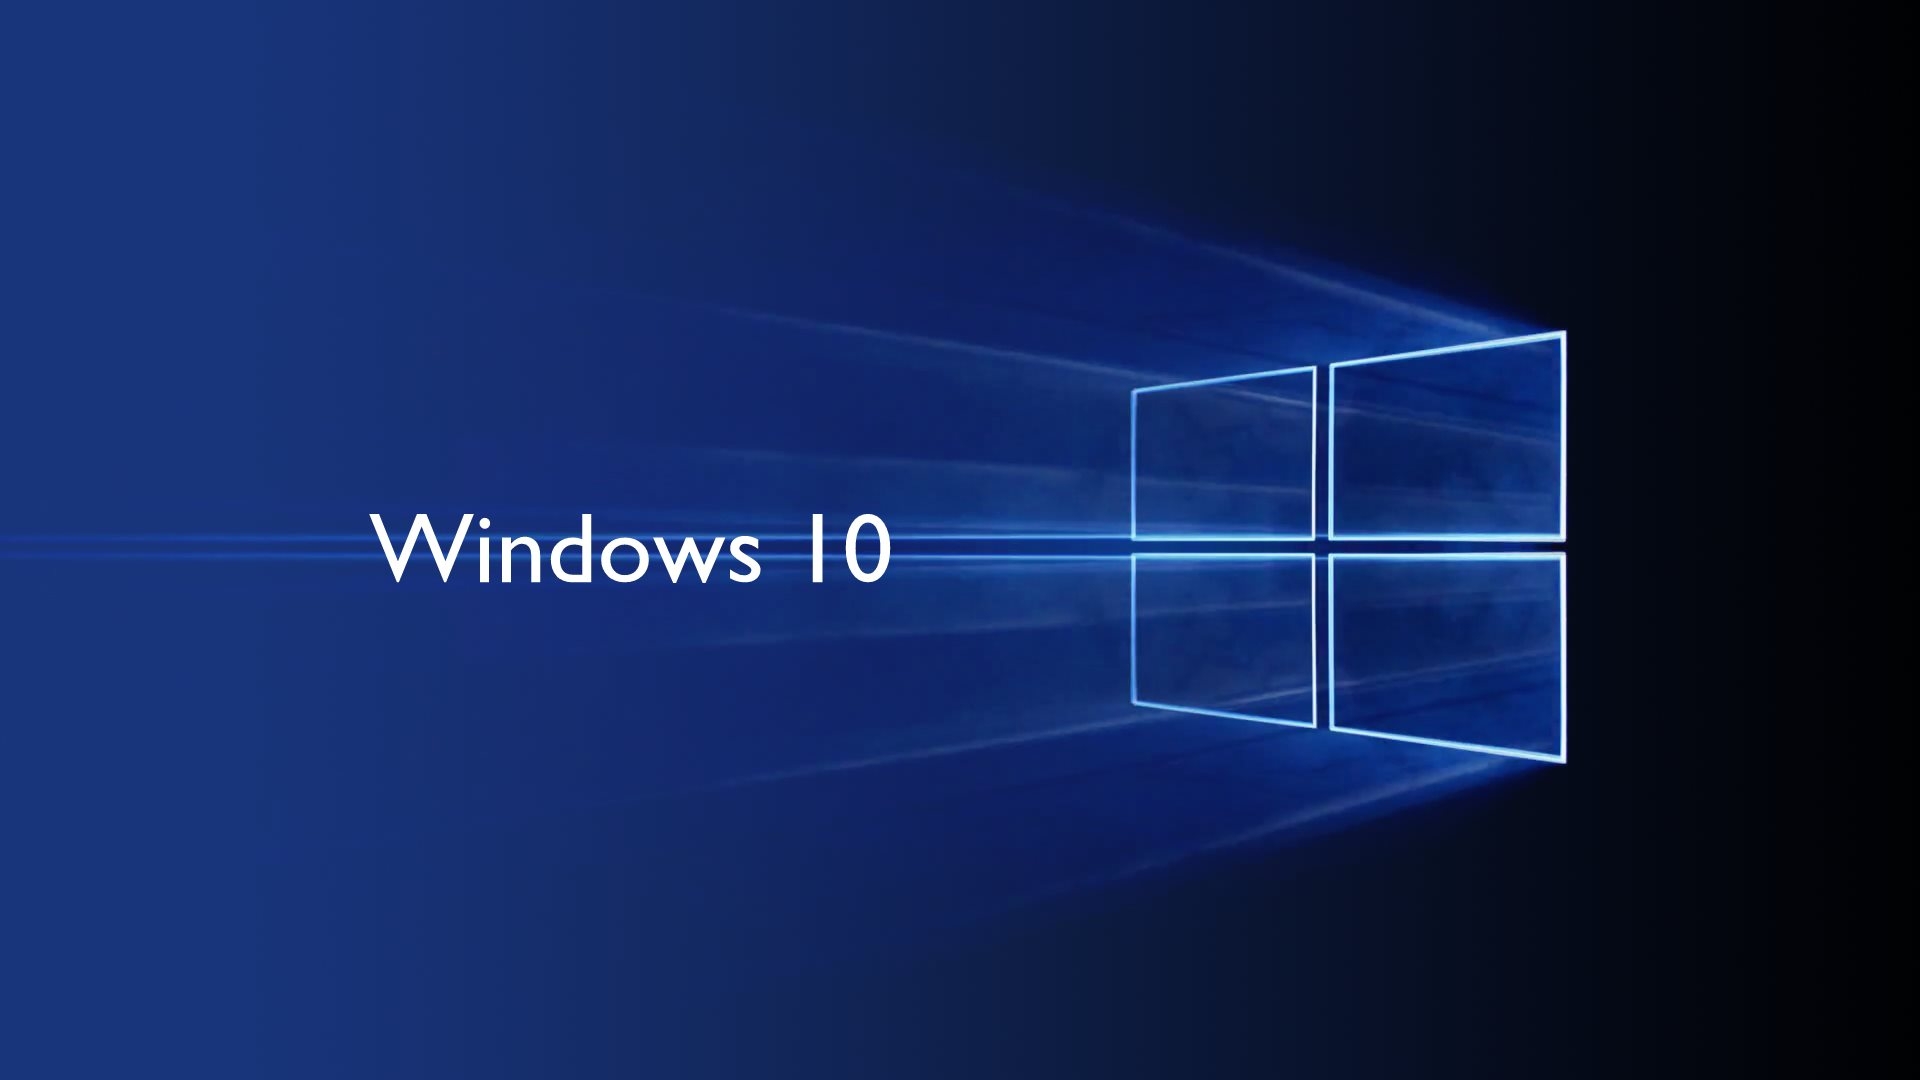 Ponowna instalacja systemu Windows 10: Konfiguracja i instalacja sterowników  - zdjęcie